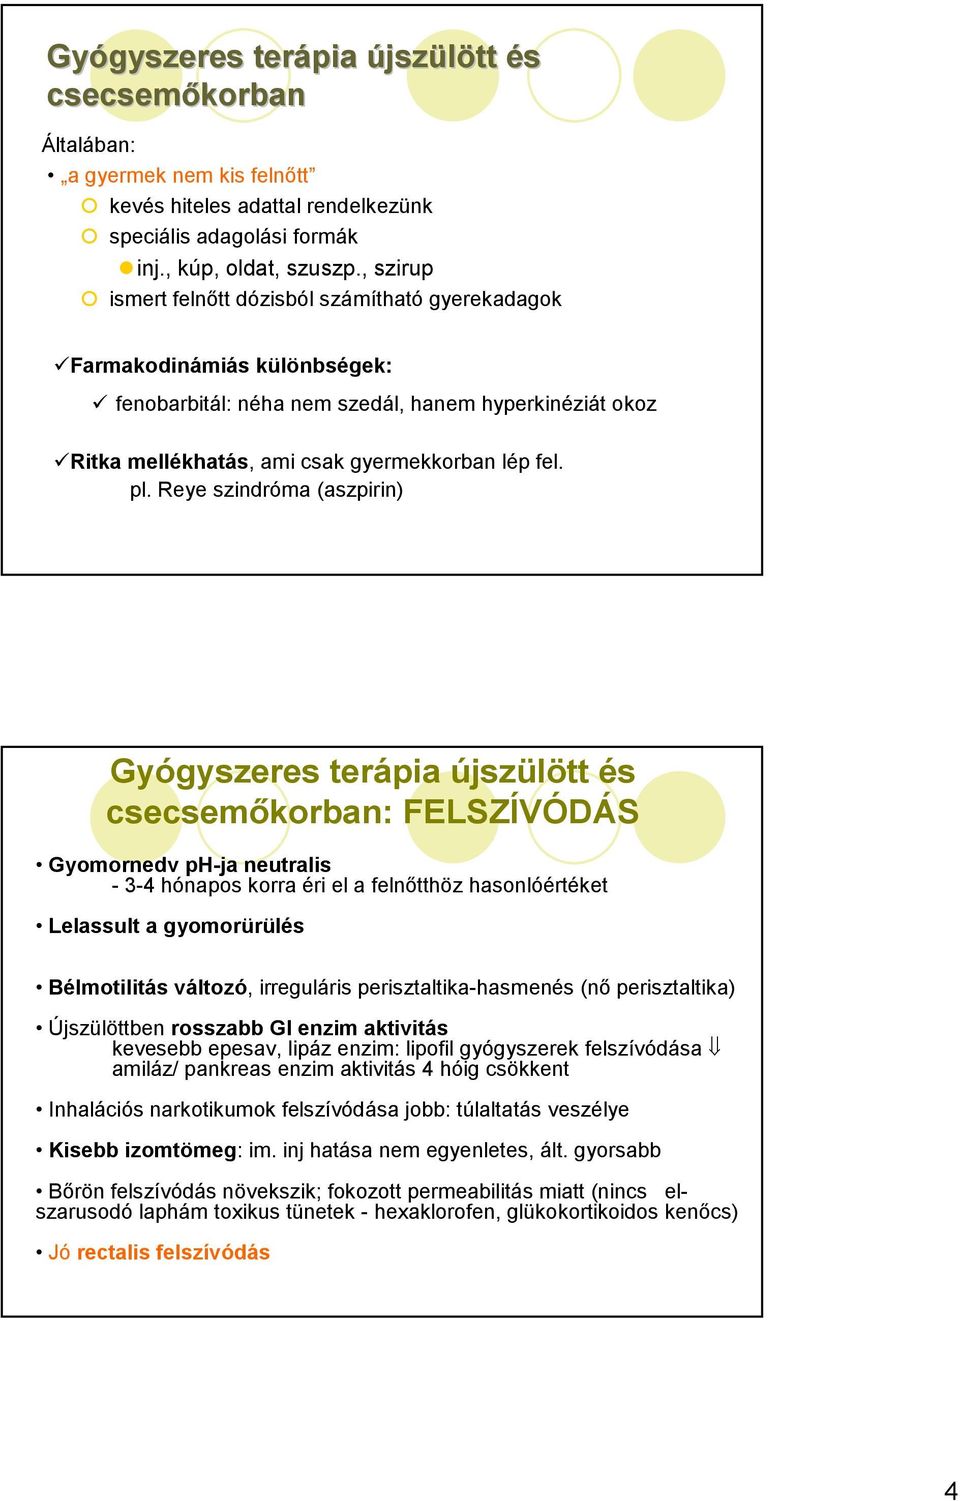 befolyásol állapotok, Gyógyszer Klinikai Gyógyszer gyszerészetszet 5M Ágnes  1. Megfelelı betegnek, gyszert, 3. Megfelelı adagban, eljuttatni. - PDF  Ingyenes letöltés